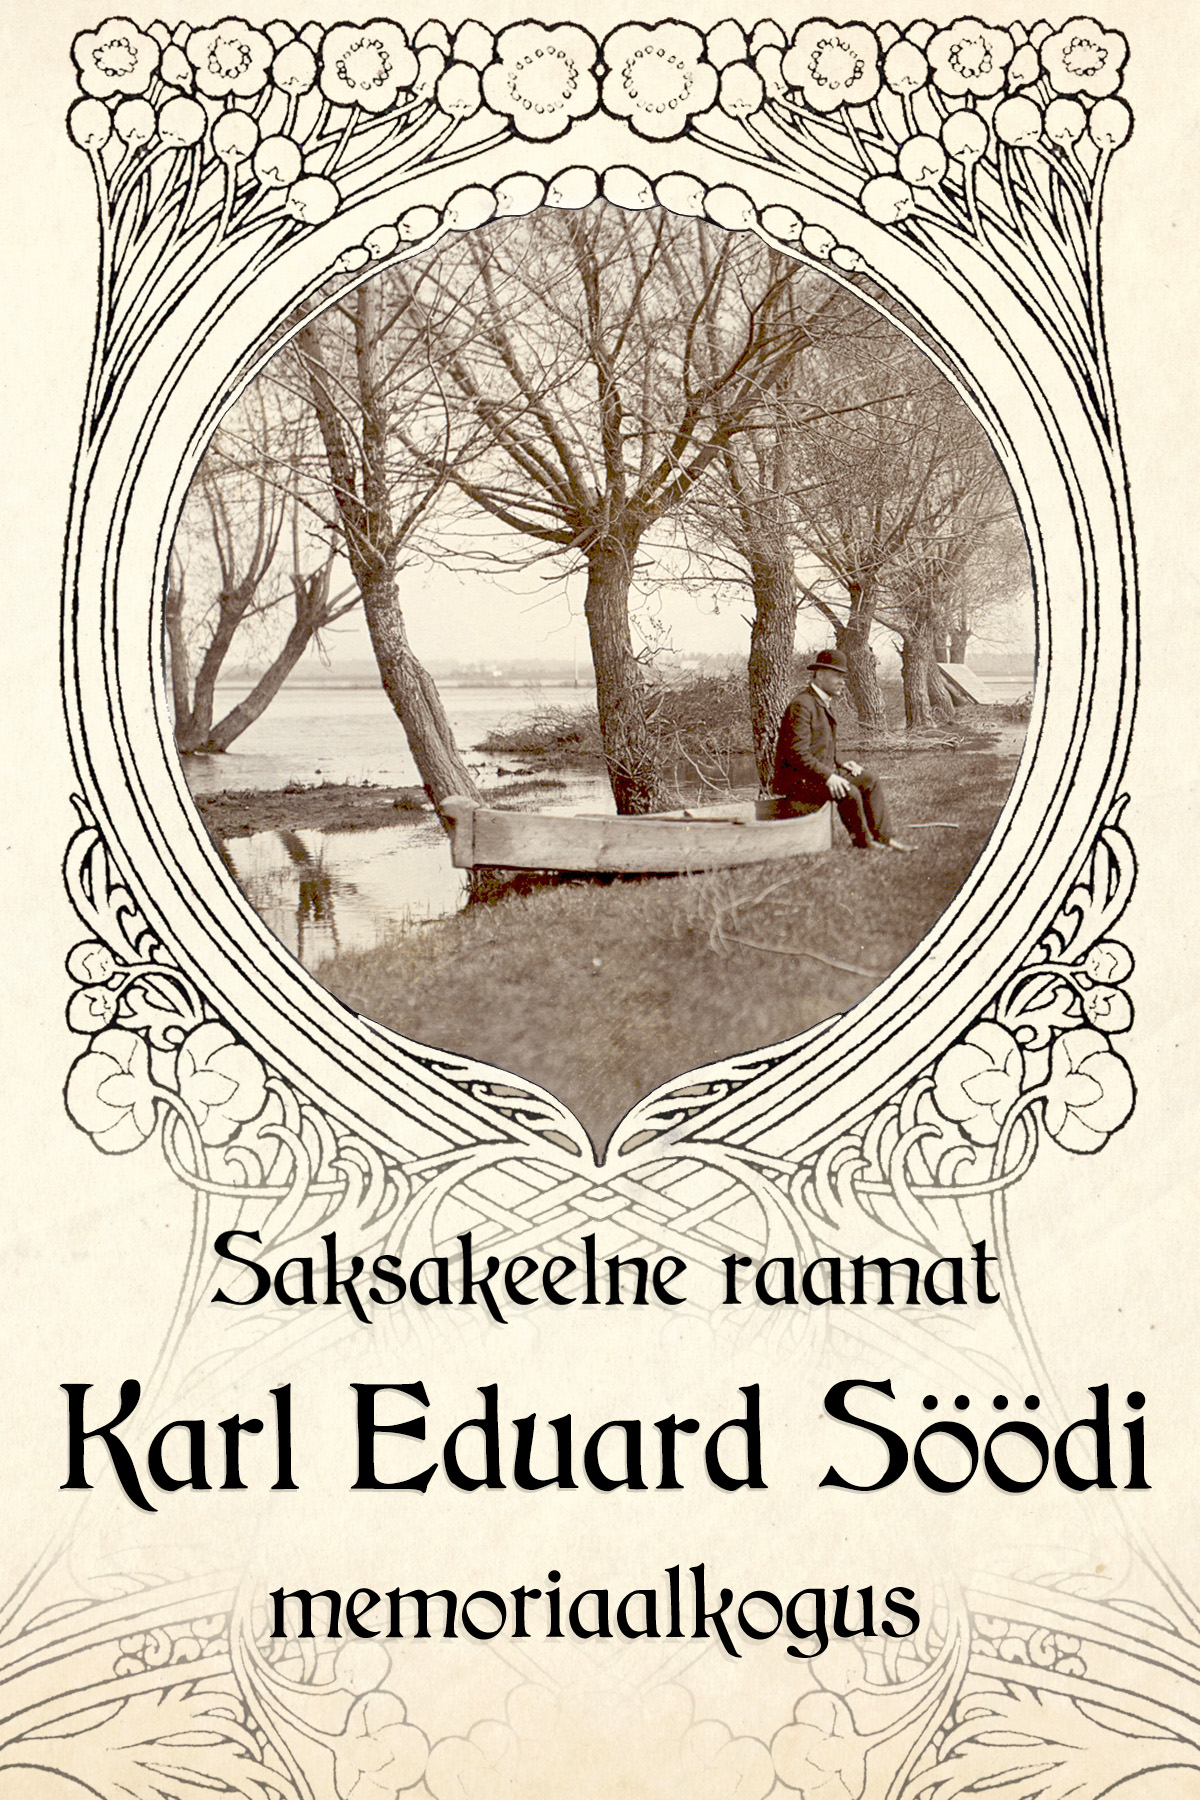 Saksakeelne raamat Karl Eduard Söödi memoriaalkogus. Näituse plakat